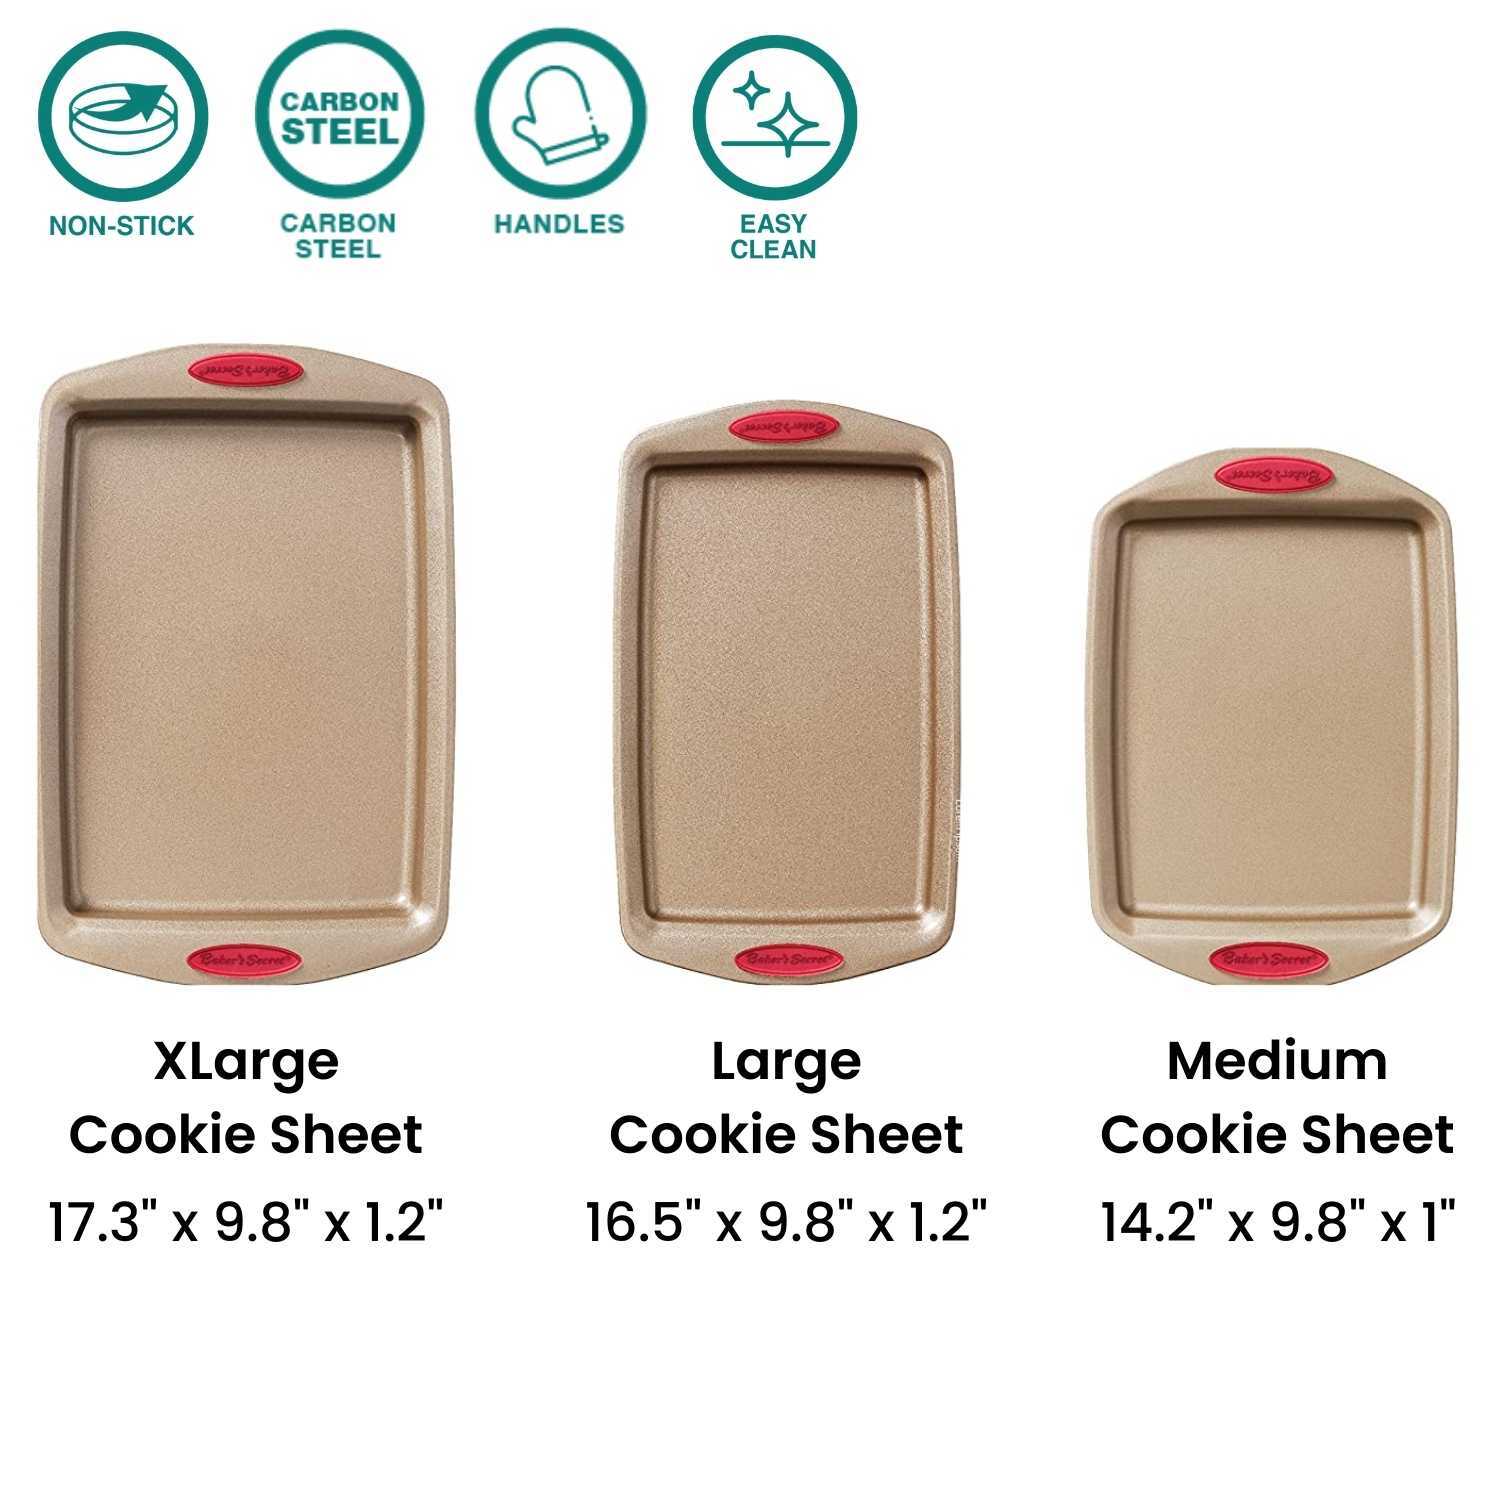 Baker's Secret Non-Stick Carbon Steel 3 Piece Cookie Sheet Set